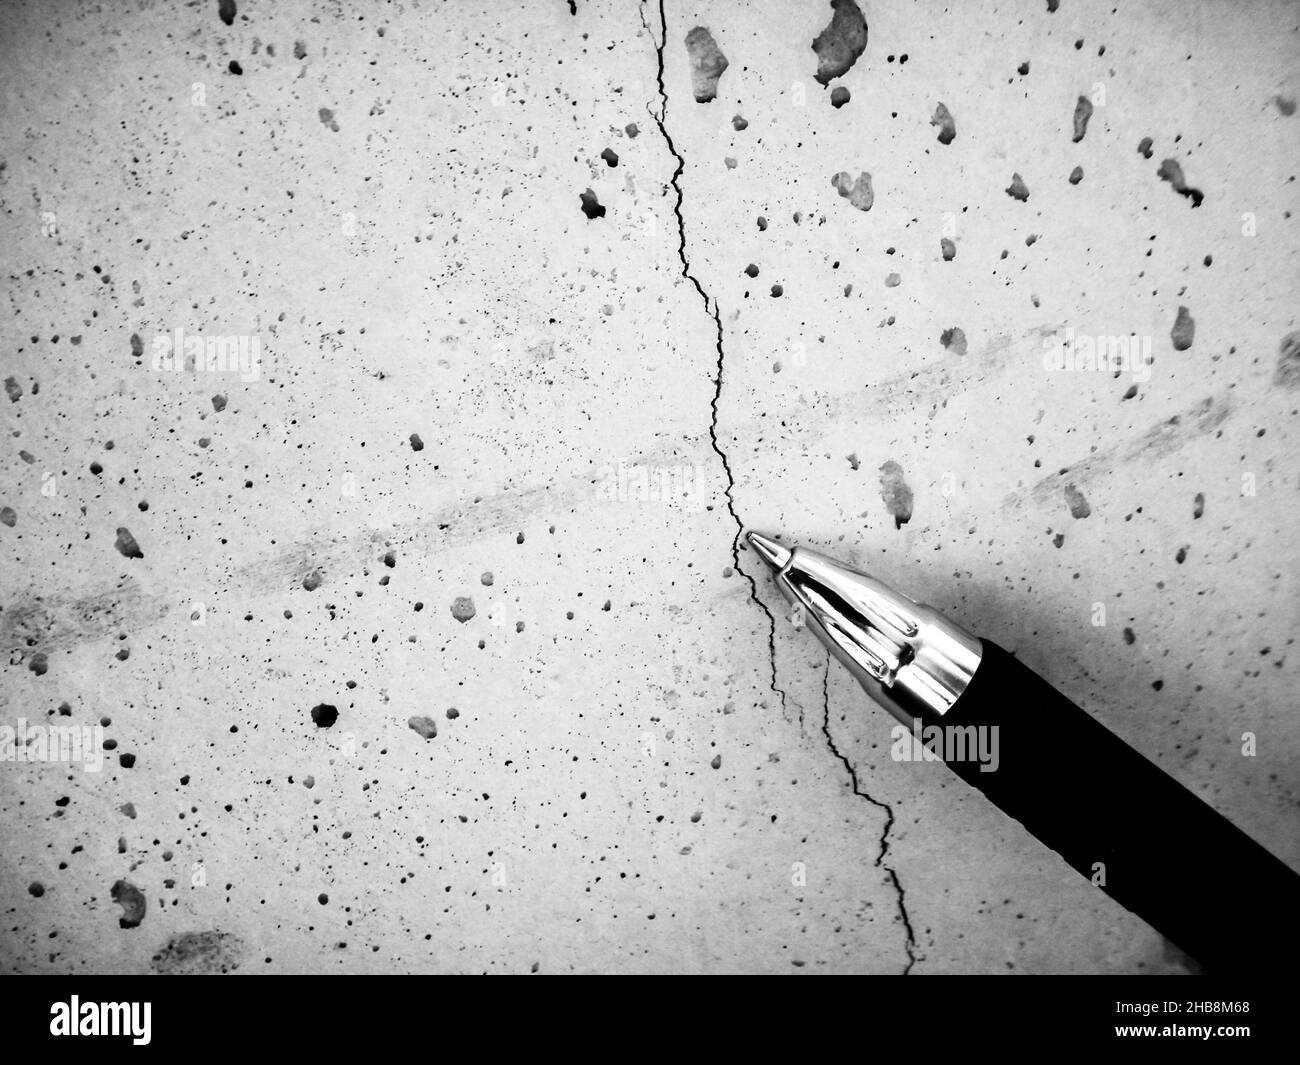 Flacher Haarriss in frischem Beton durch Schrumpfung während des Aushärtens. Als Referenz verwendeter Stift. Stockfoto